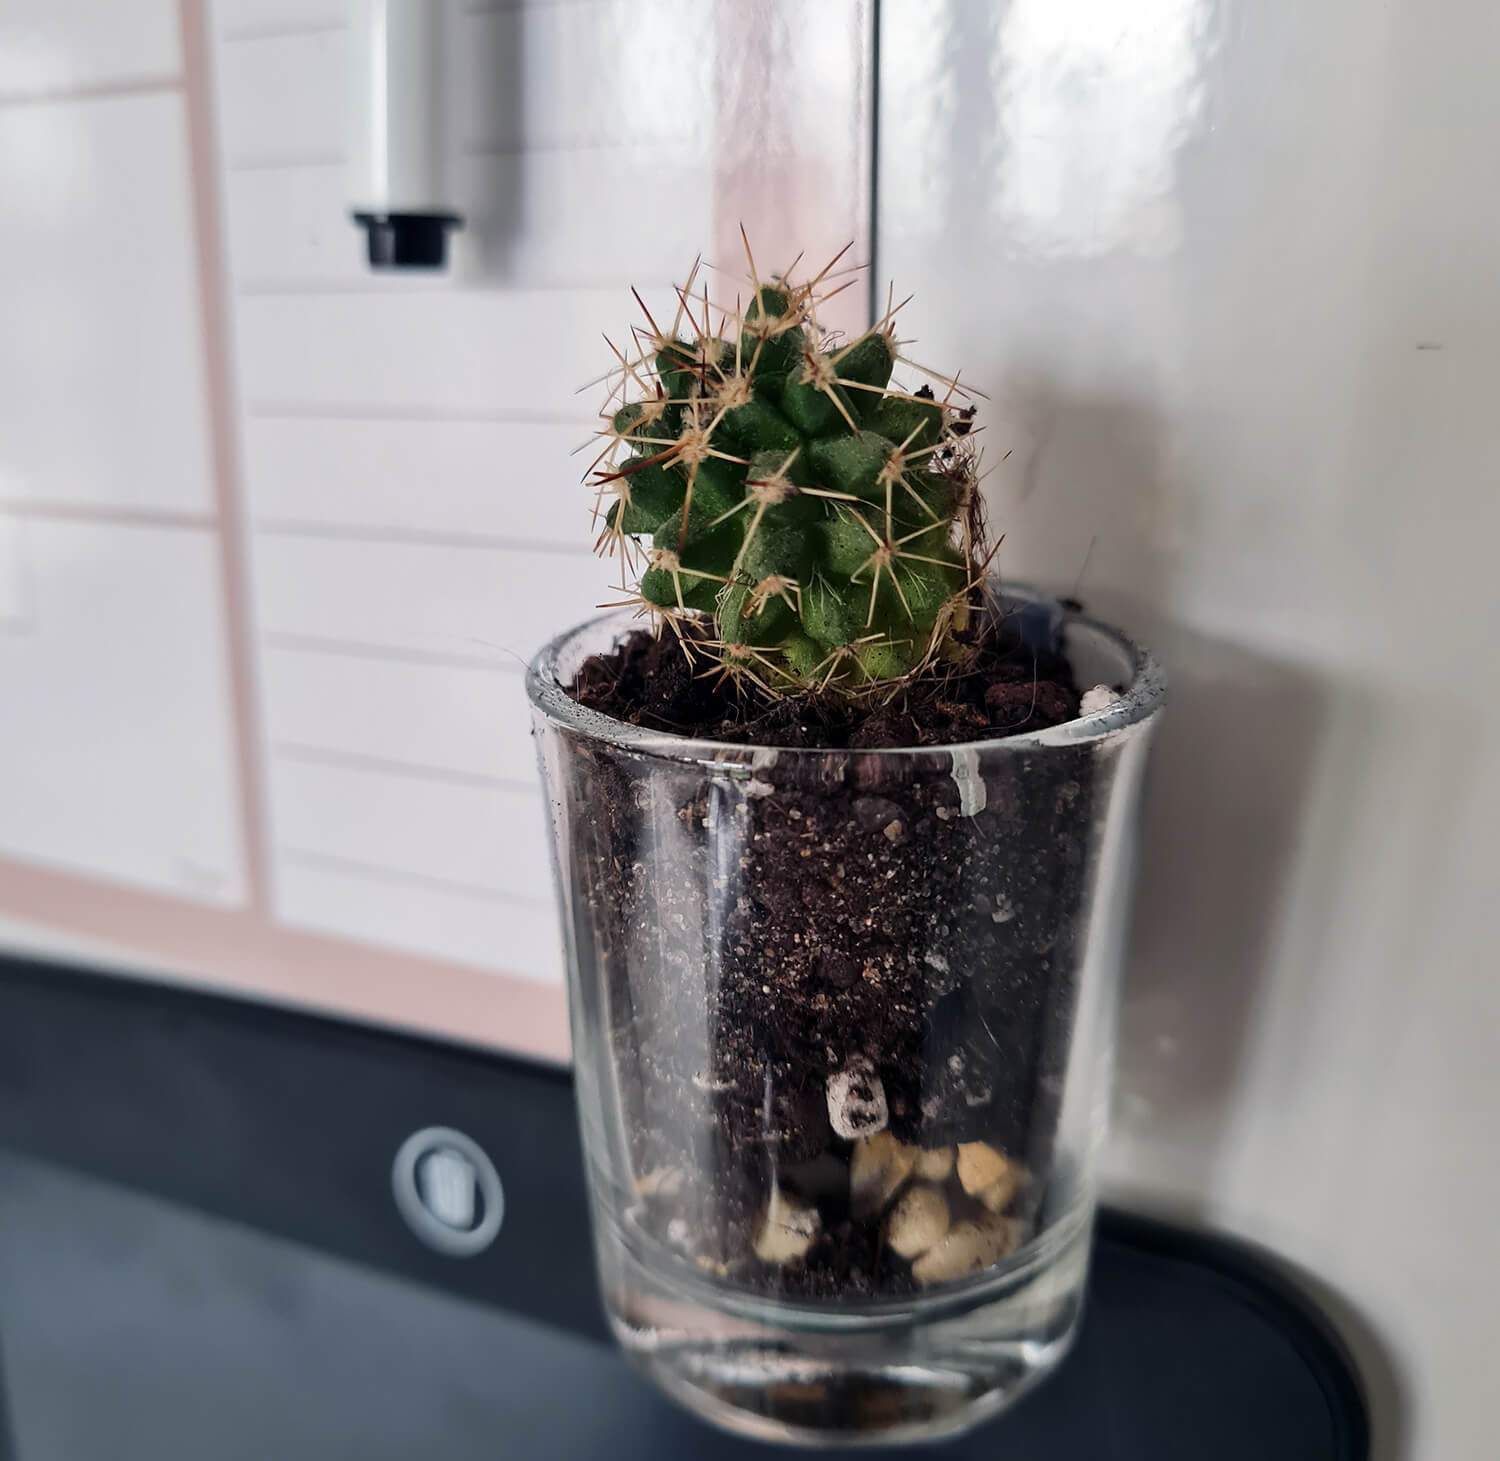 DIY cuisine : fabriquer des magnets cactus pour le frigo